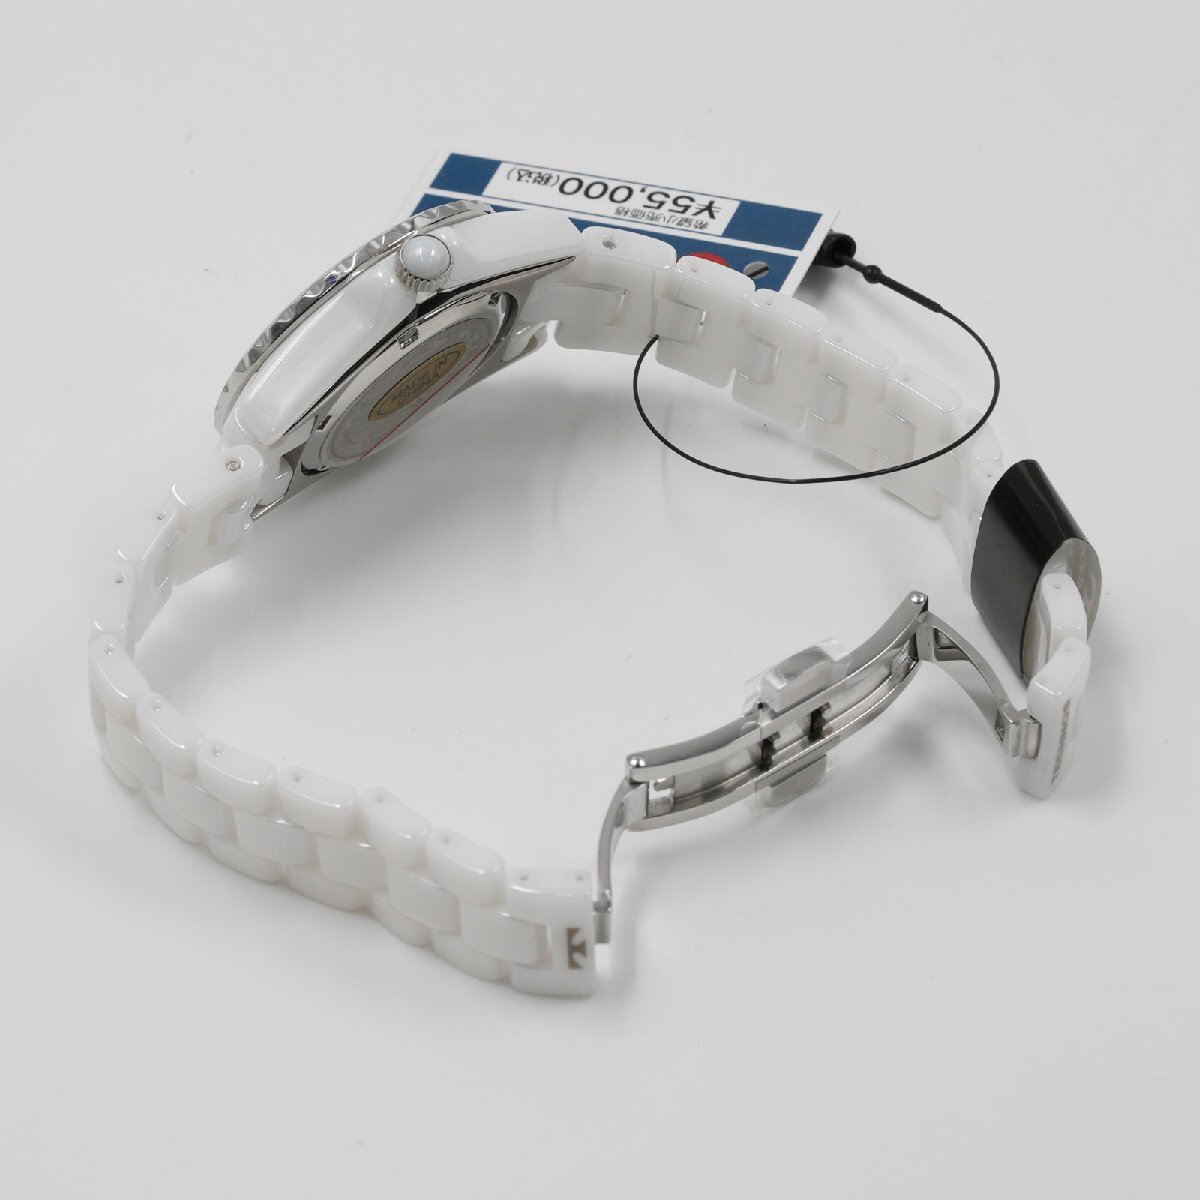  Tecnos TECHNOS наручные часы T9924TW J12 модель белый керамика кварц женский не использовался товар [ качество iko-]